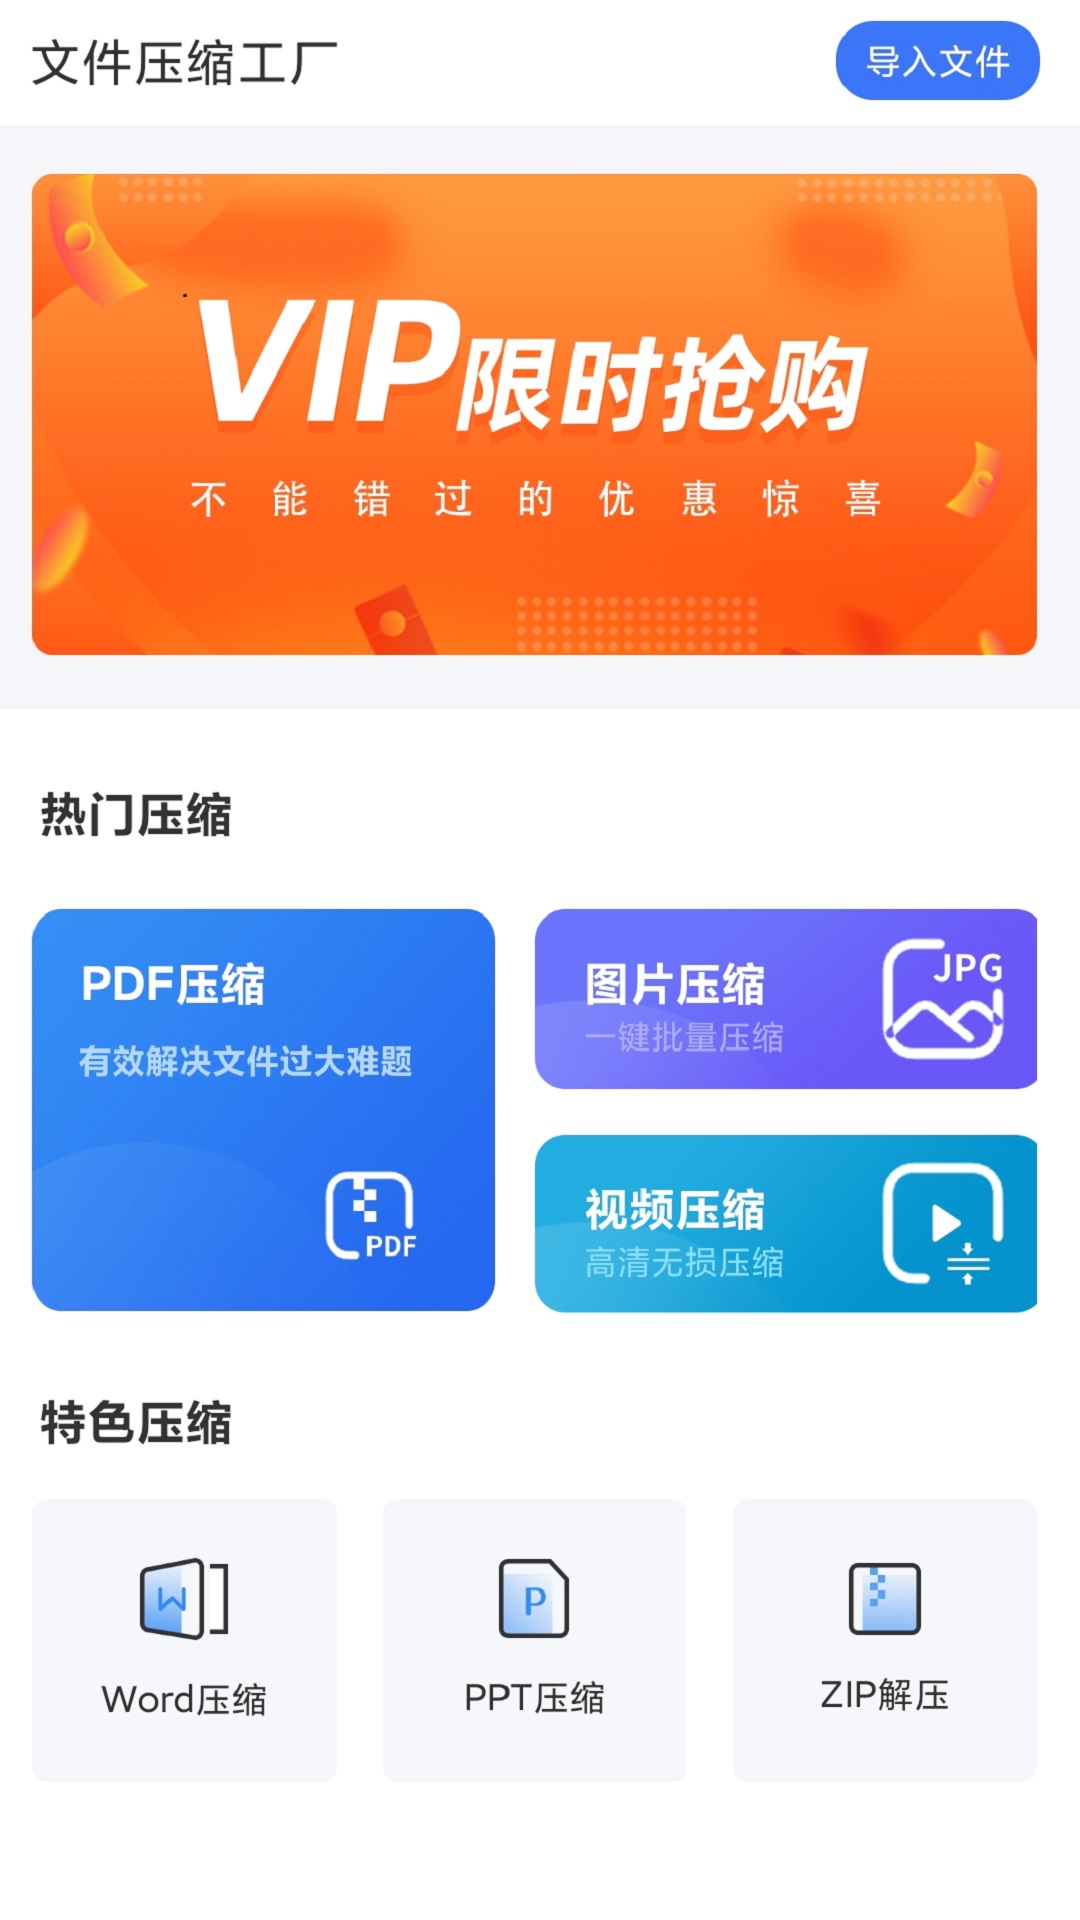 文件压缩工厂凤凰山app 开发公司